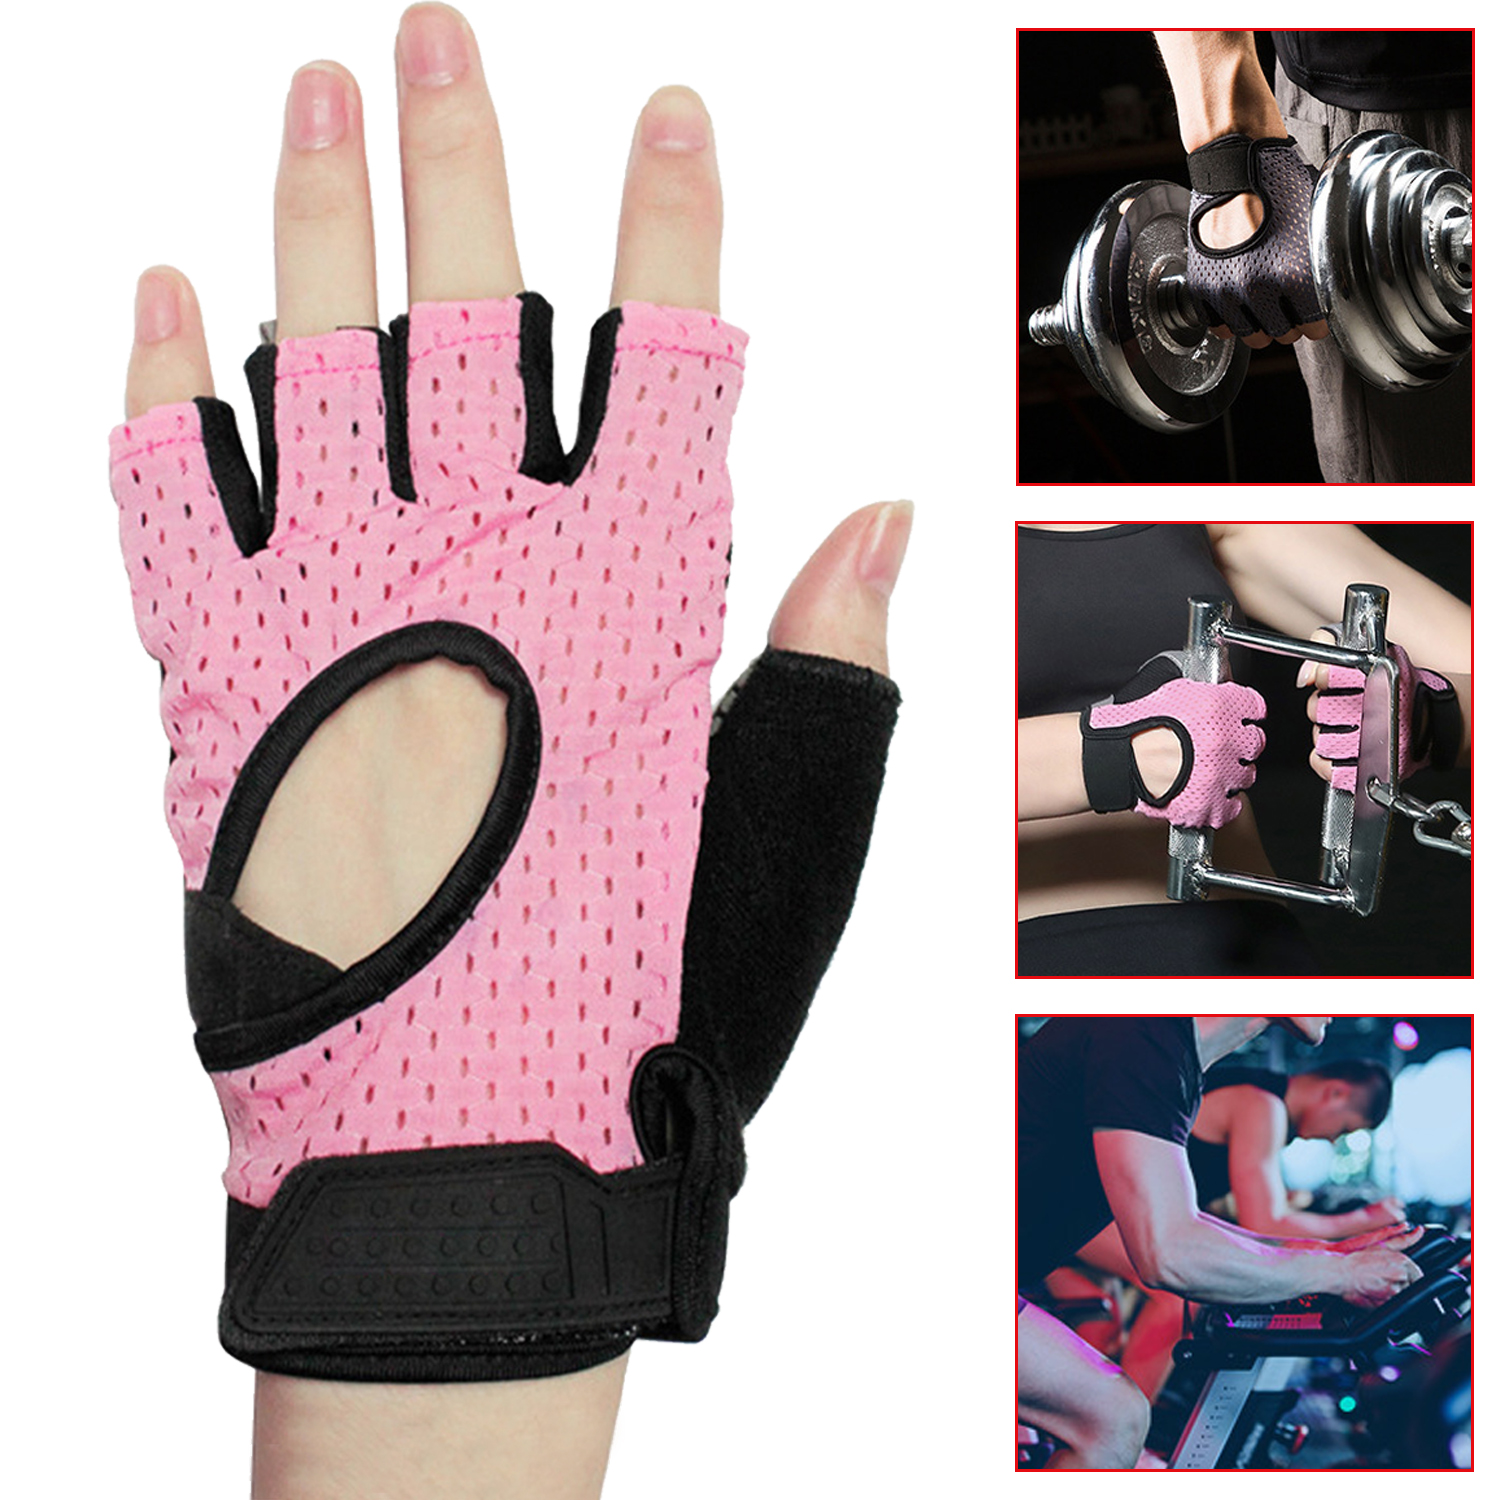 Fitness antideslizante guantes sin dedos levantamiento de pesas hombres mujeres guante ejercicio medio dedo Fitness deporte guantes